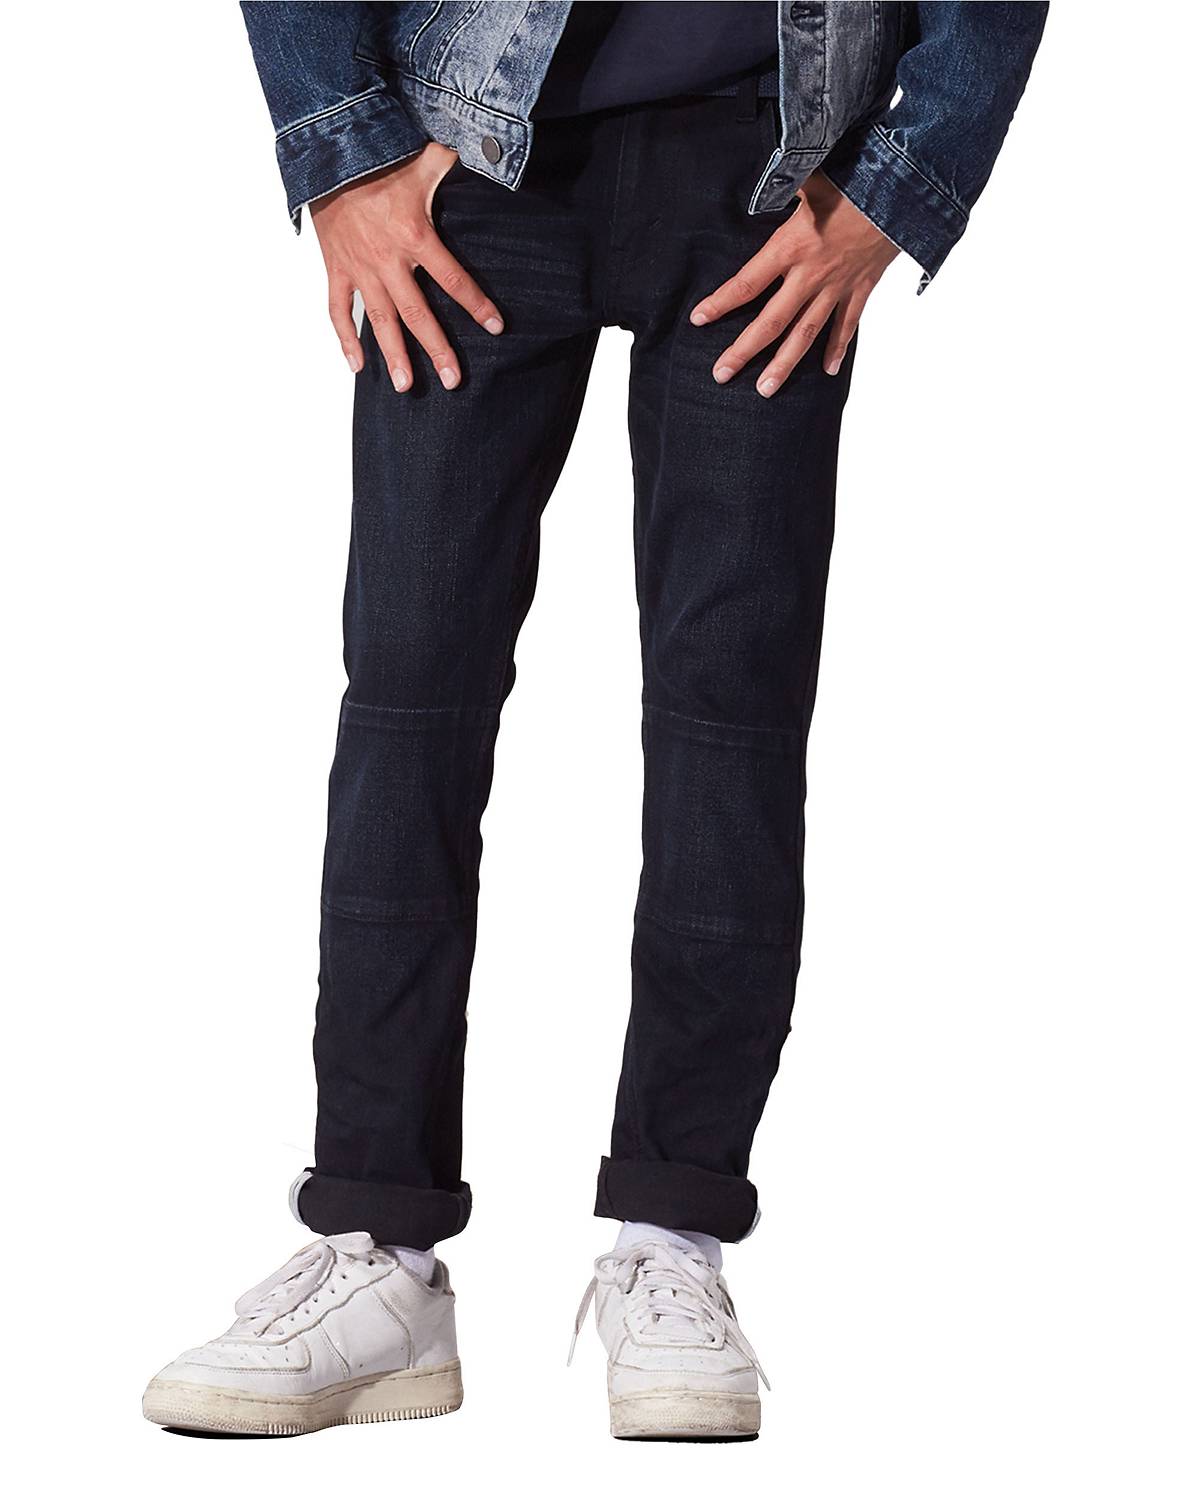 Boy wearing 511™ Slim Jeans